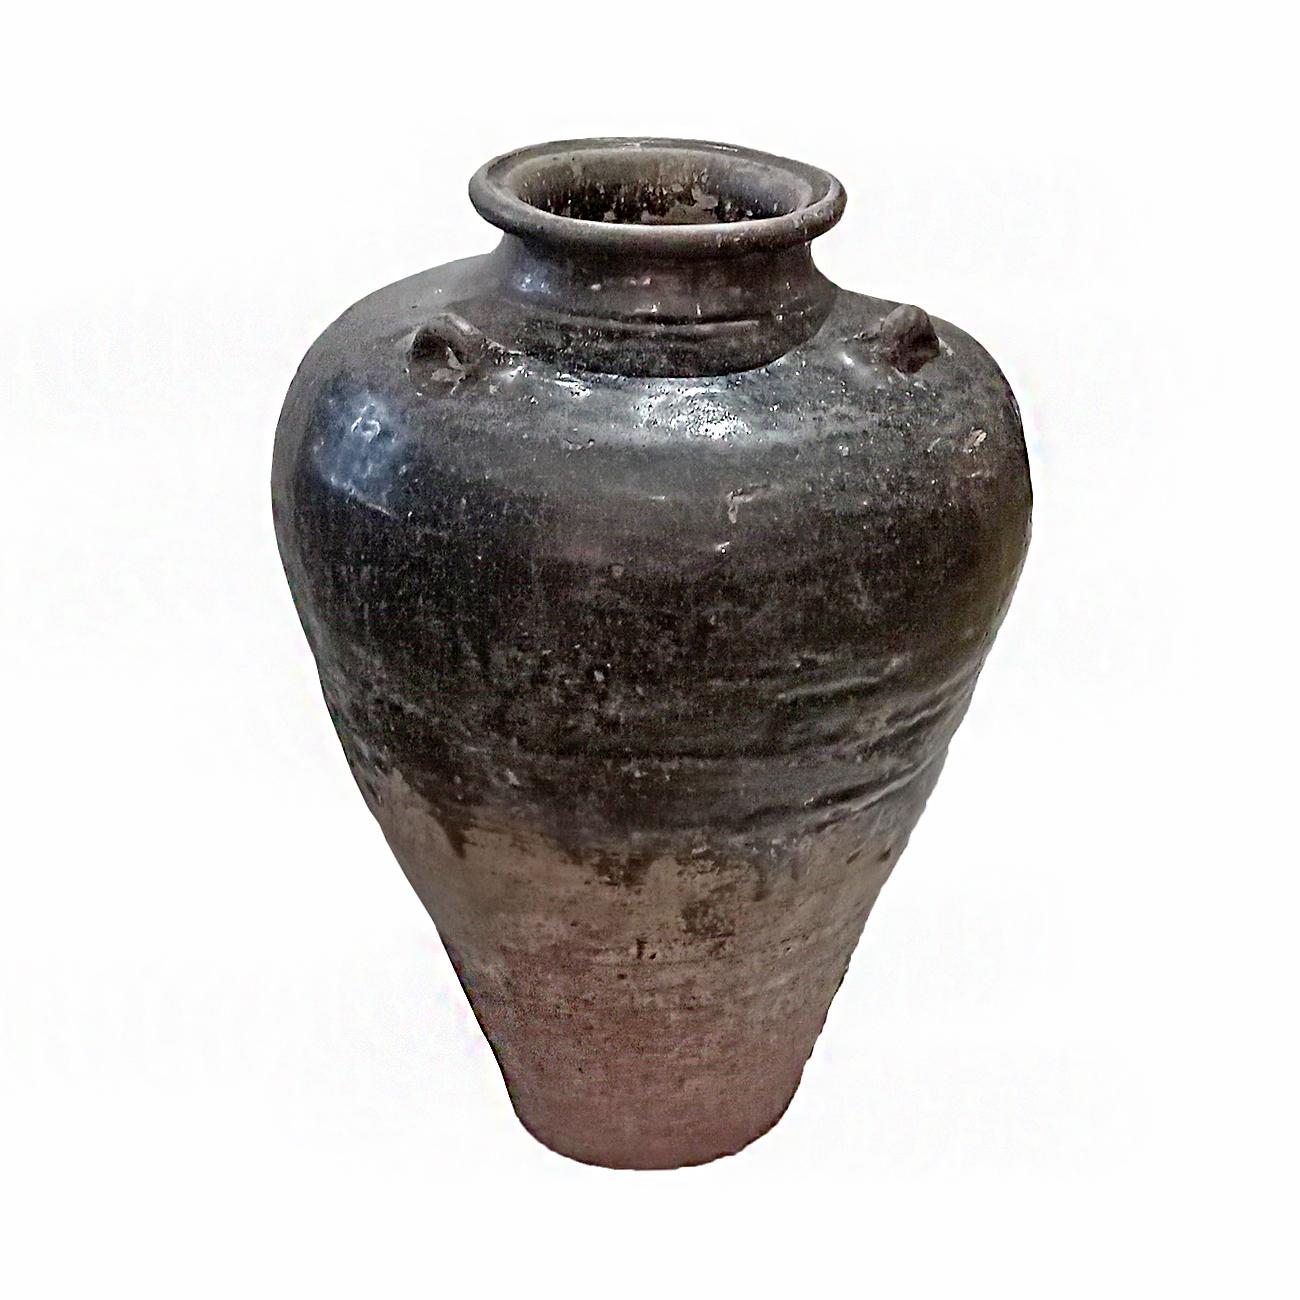 Ein großer Terrakotta-Krug / Vase / Urne aus Bali, Indonesien, Ende des 20. Jahrhunderts, handgefertigt. Dekorative Griffe und halbglänzende schwarze Glasur. Schmal oben und unten. 

Kann im Innen- und Außenbereich verwendet werden. 
